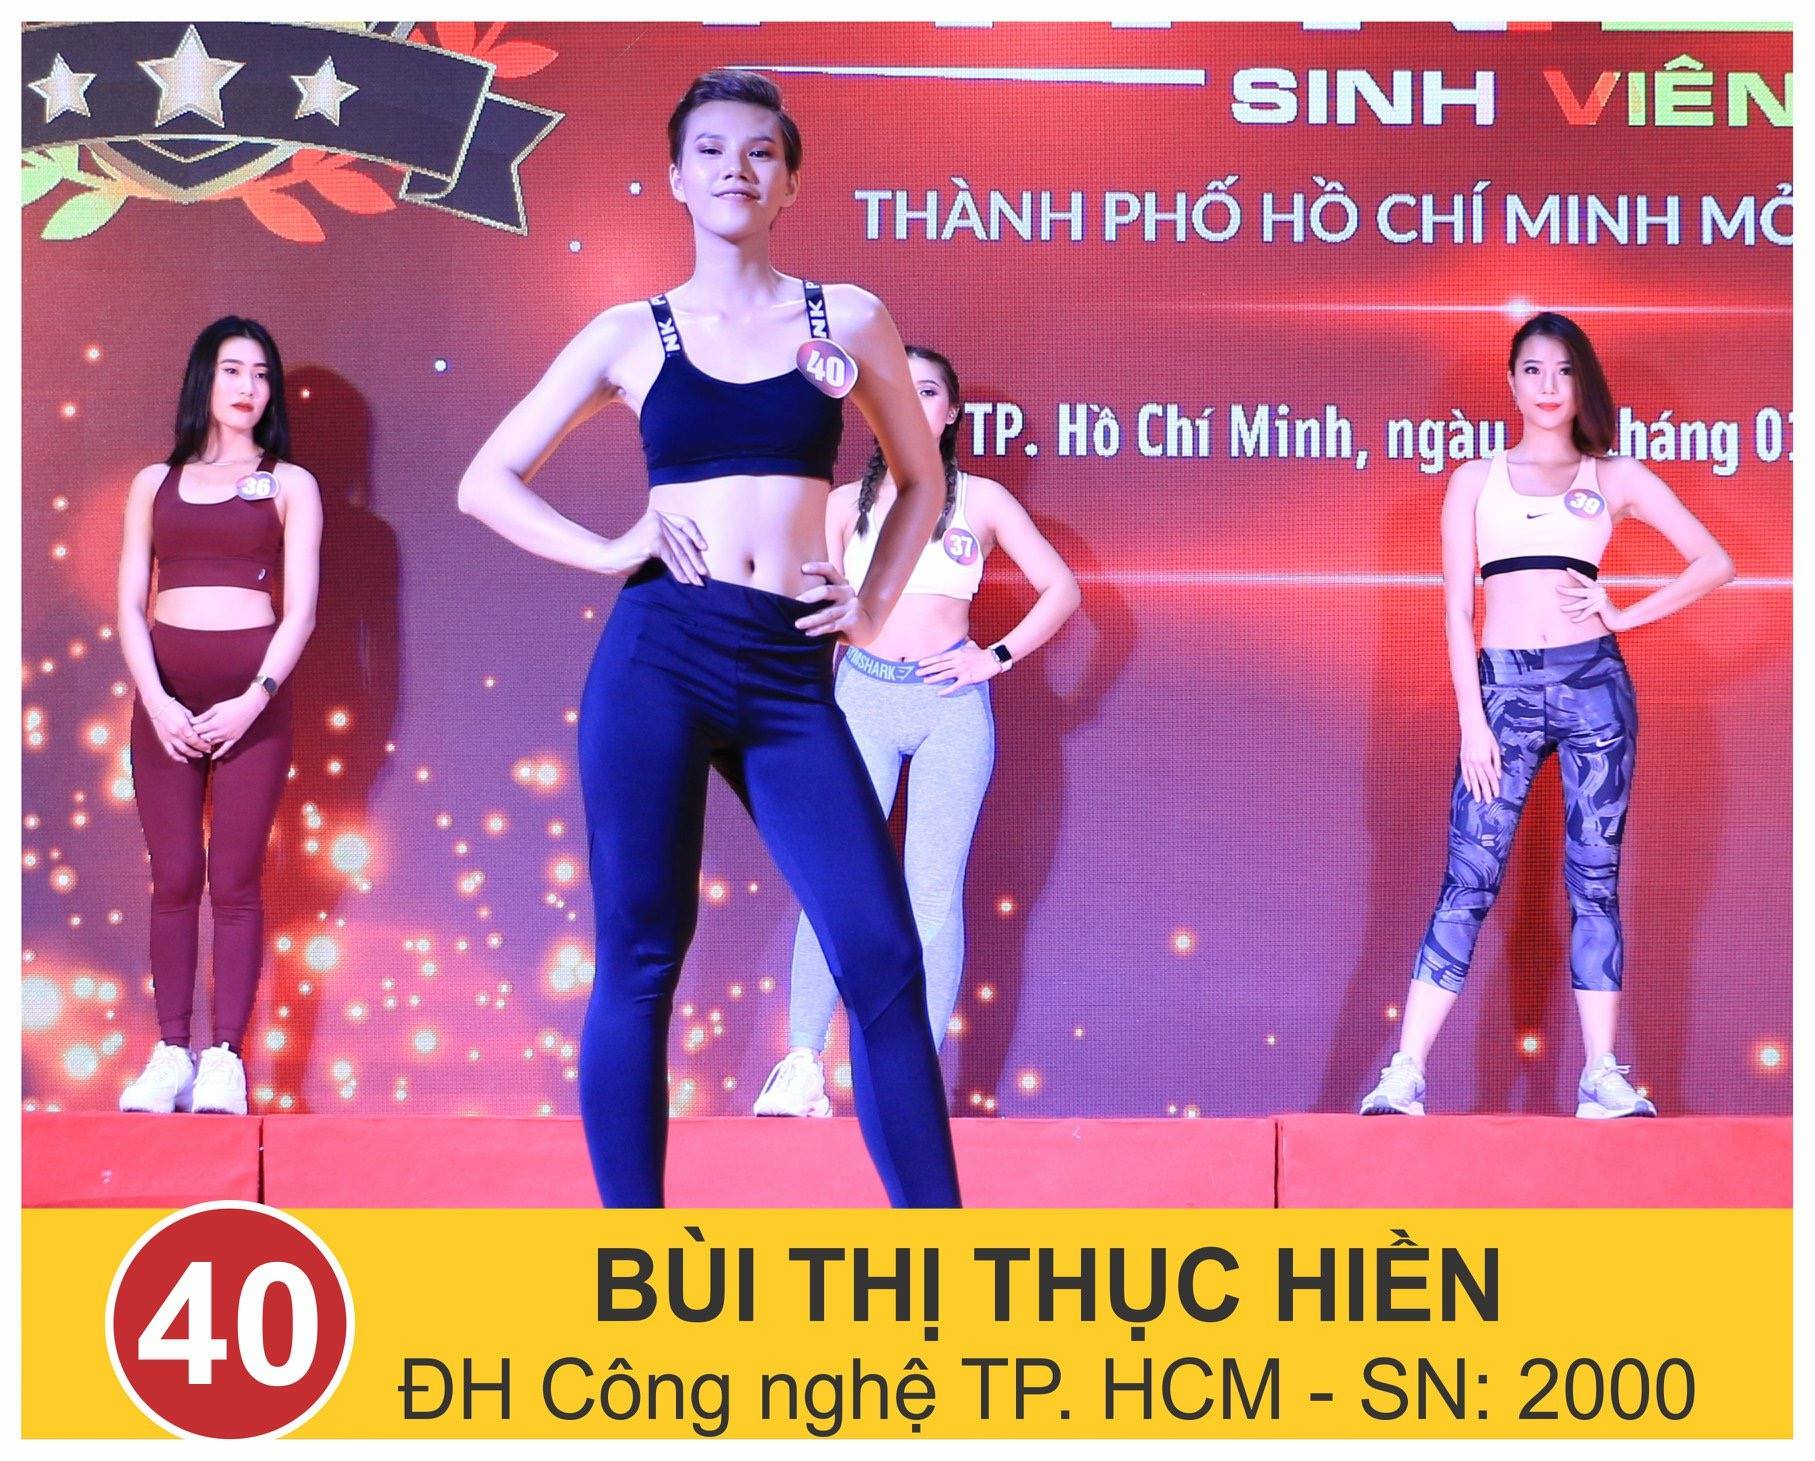 2 thành viên CLB Model HUTECH vào VCK Cuộc thi Ngôi sao Fitness Sinh viên TP.HCM 2019 13